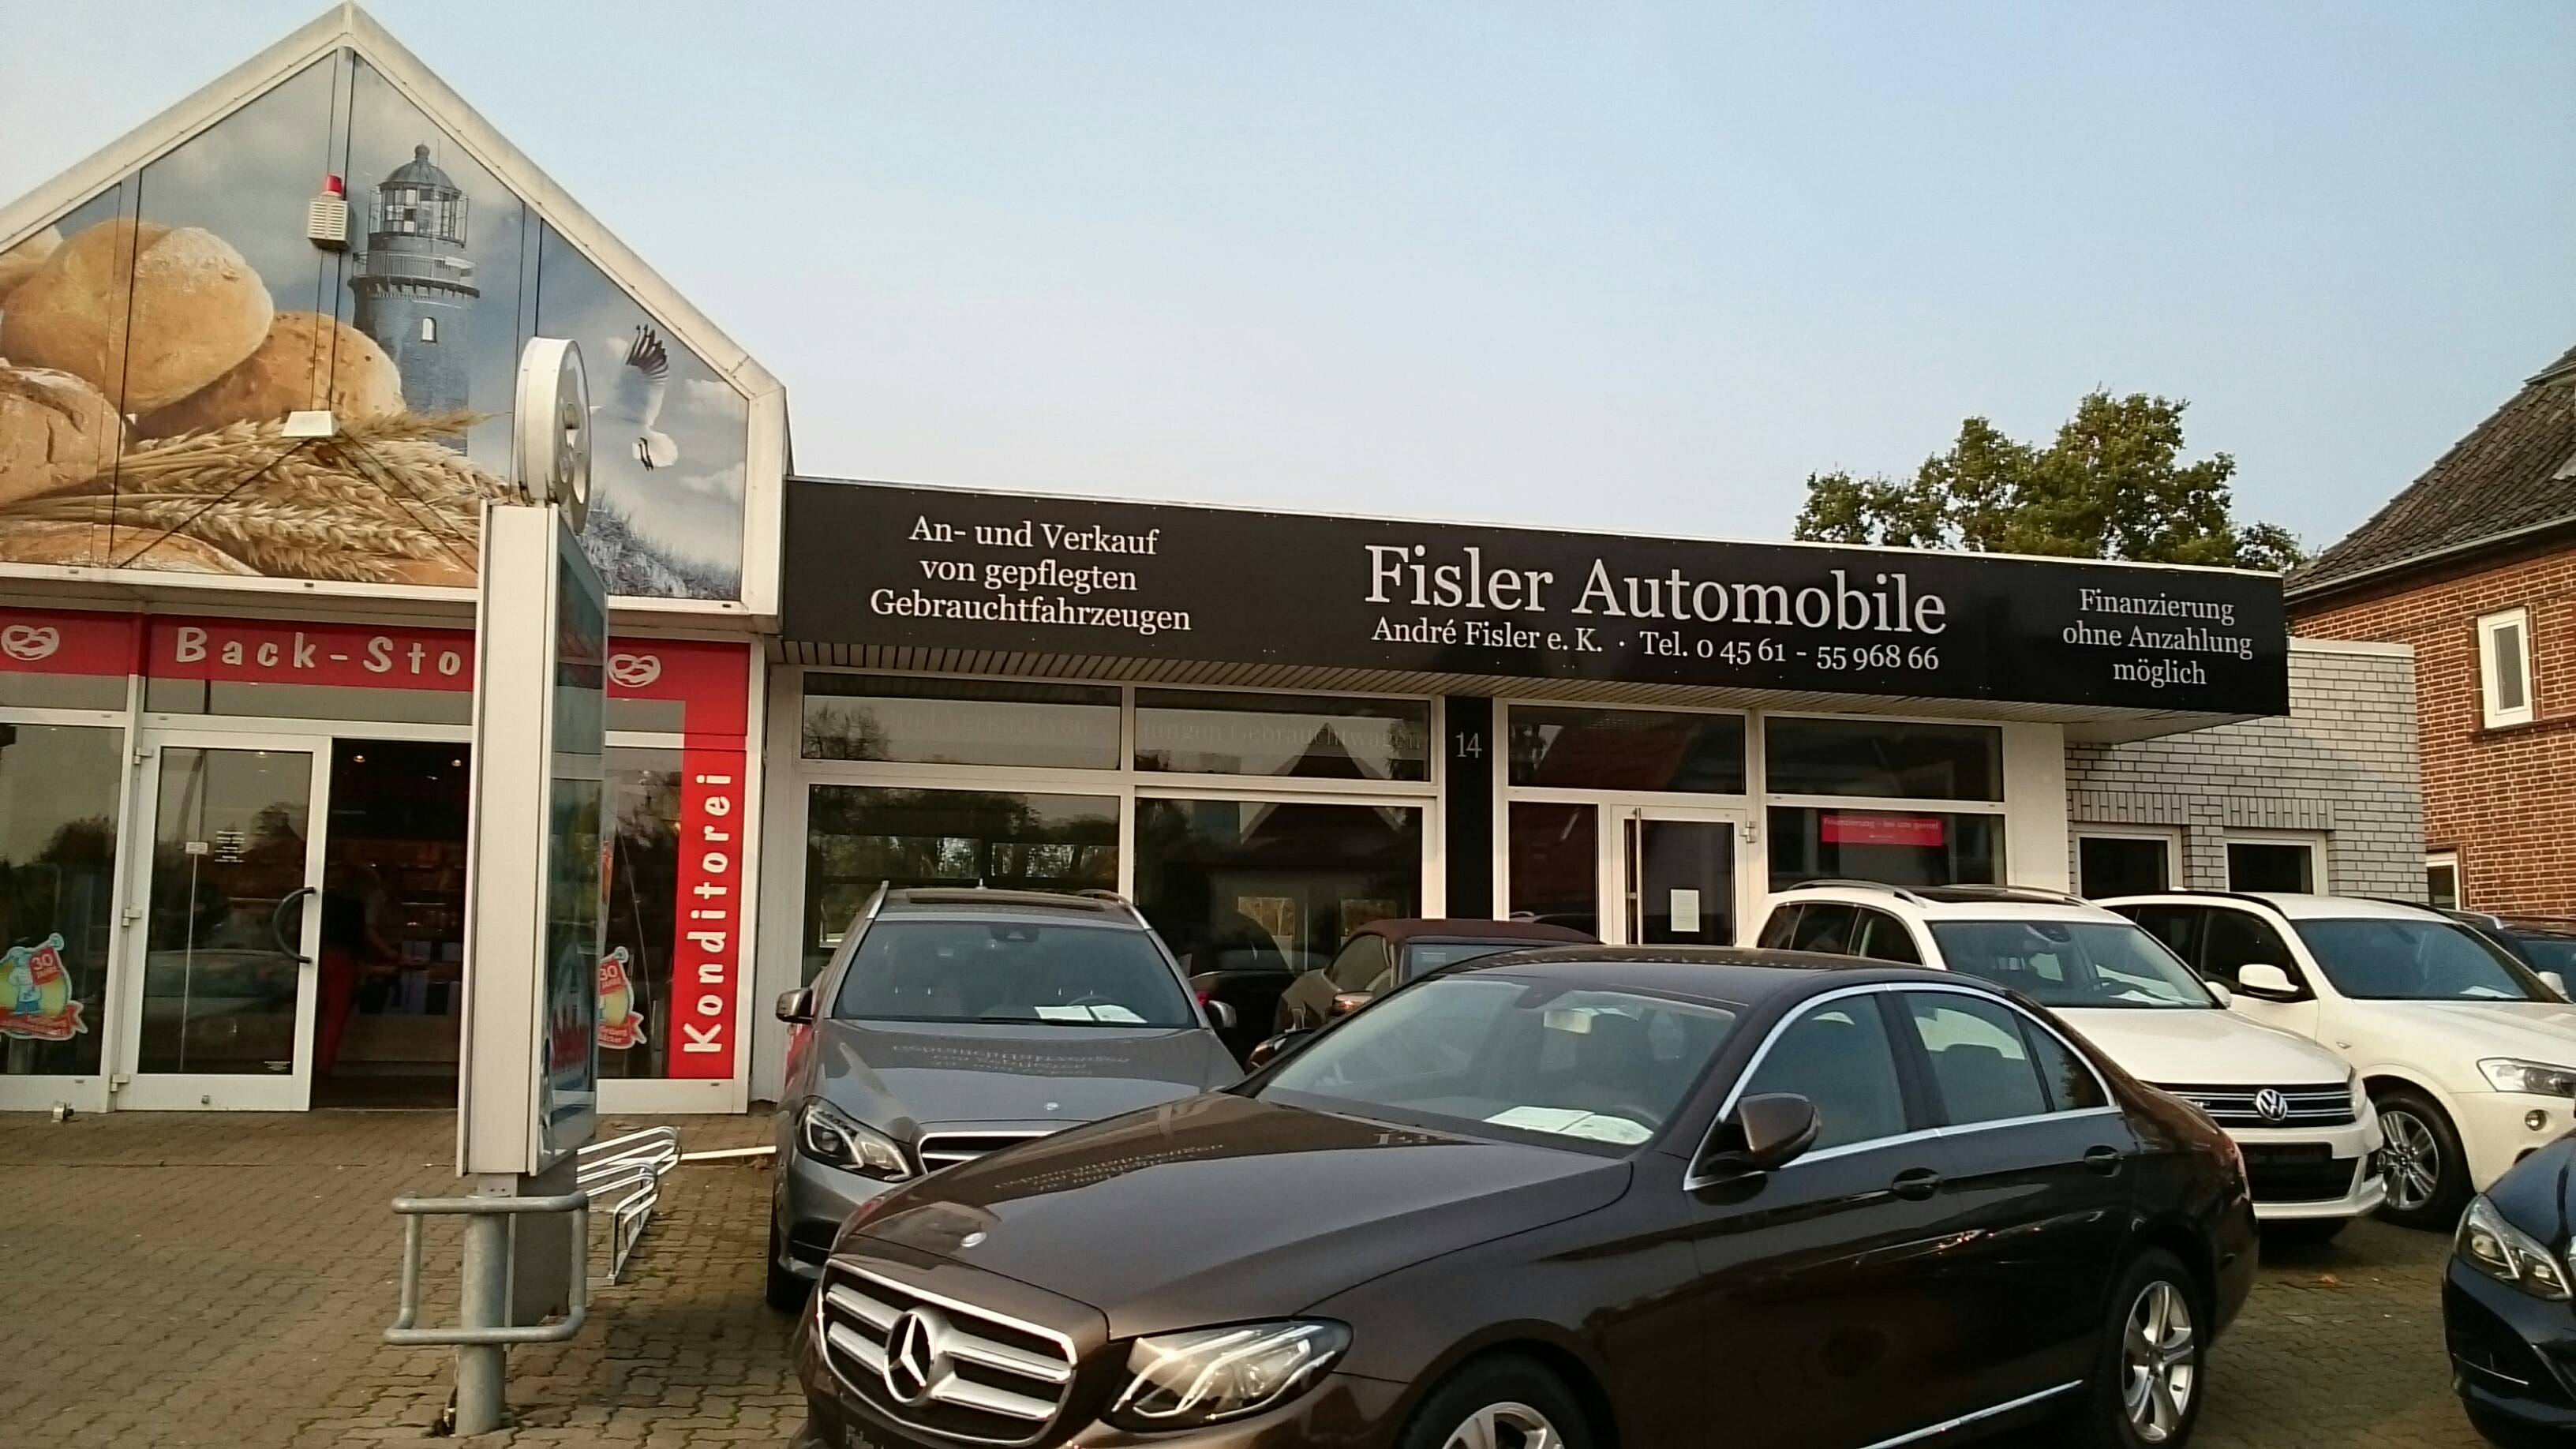 Bild 1 Fisler Automobile in Neustadt in Holstein